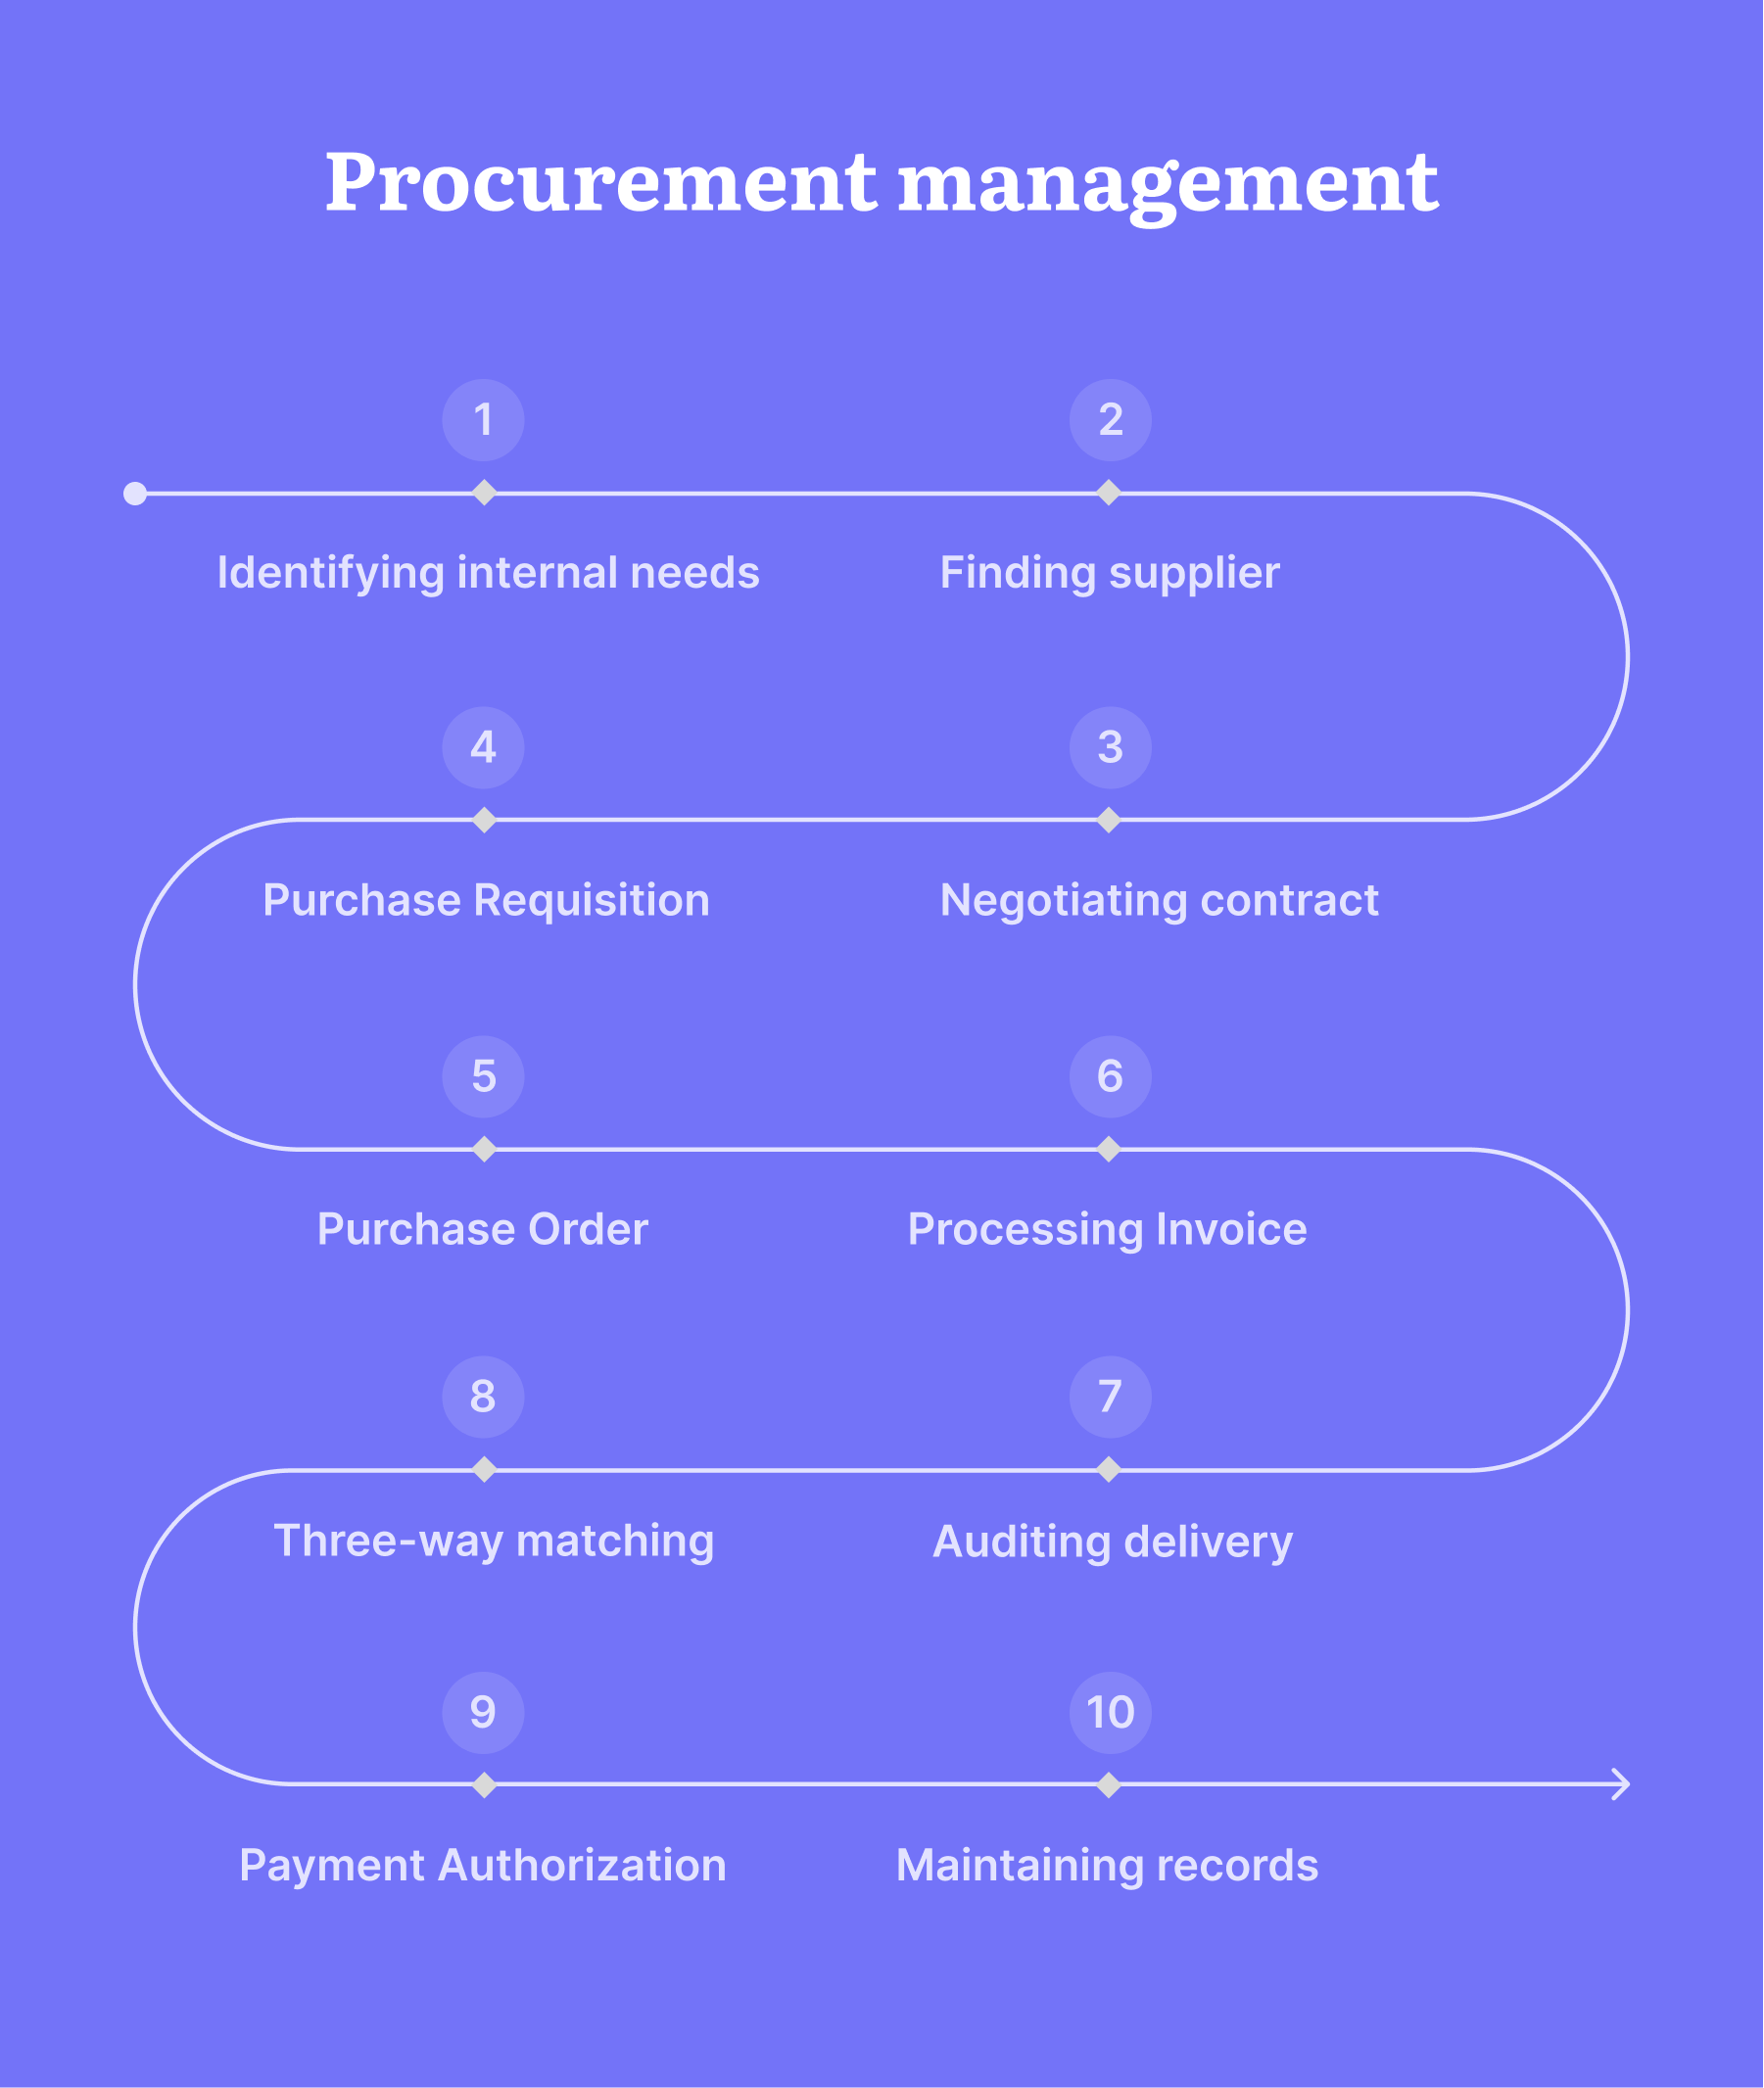 steps of procurement management process